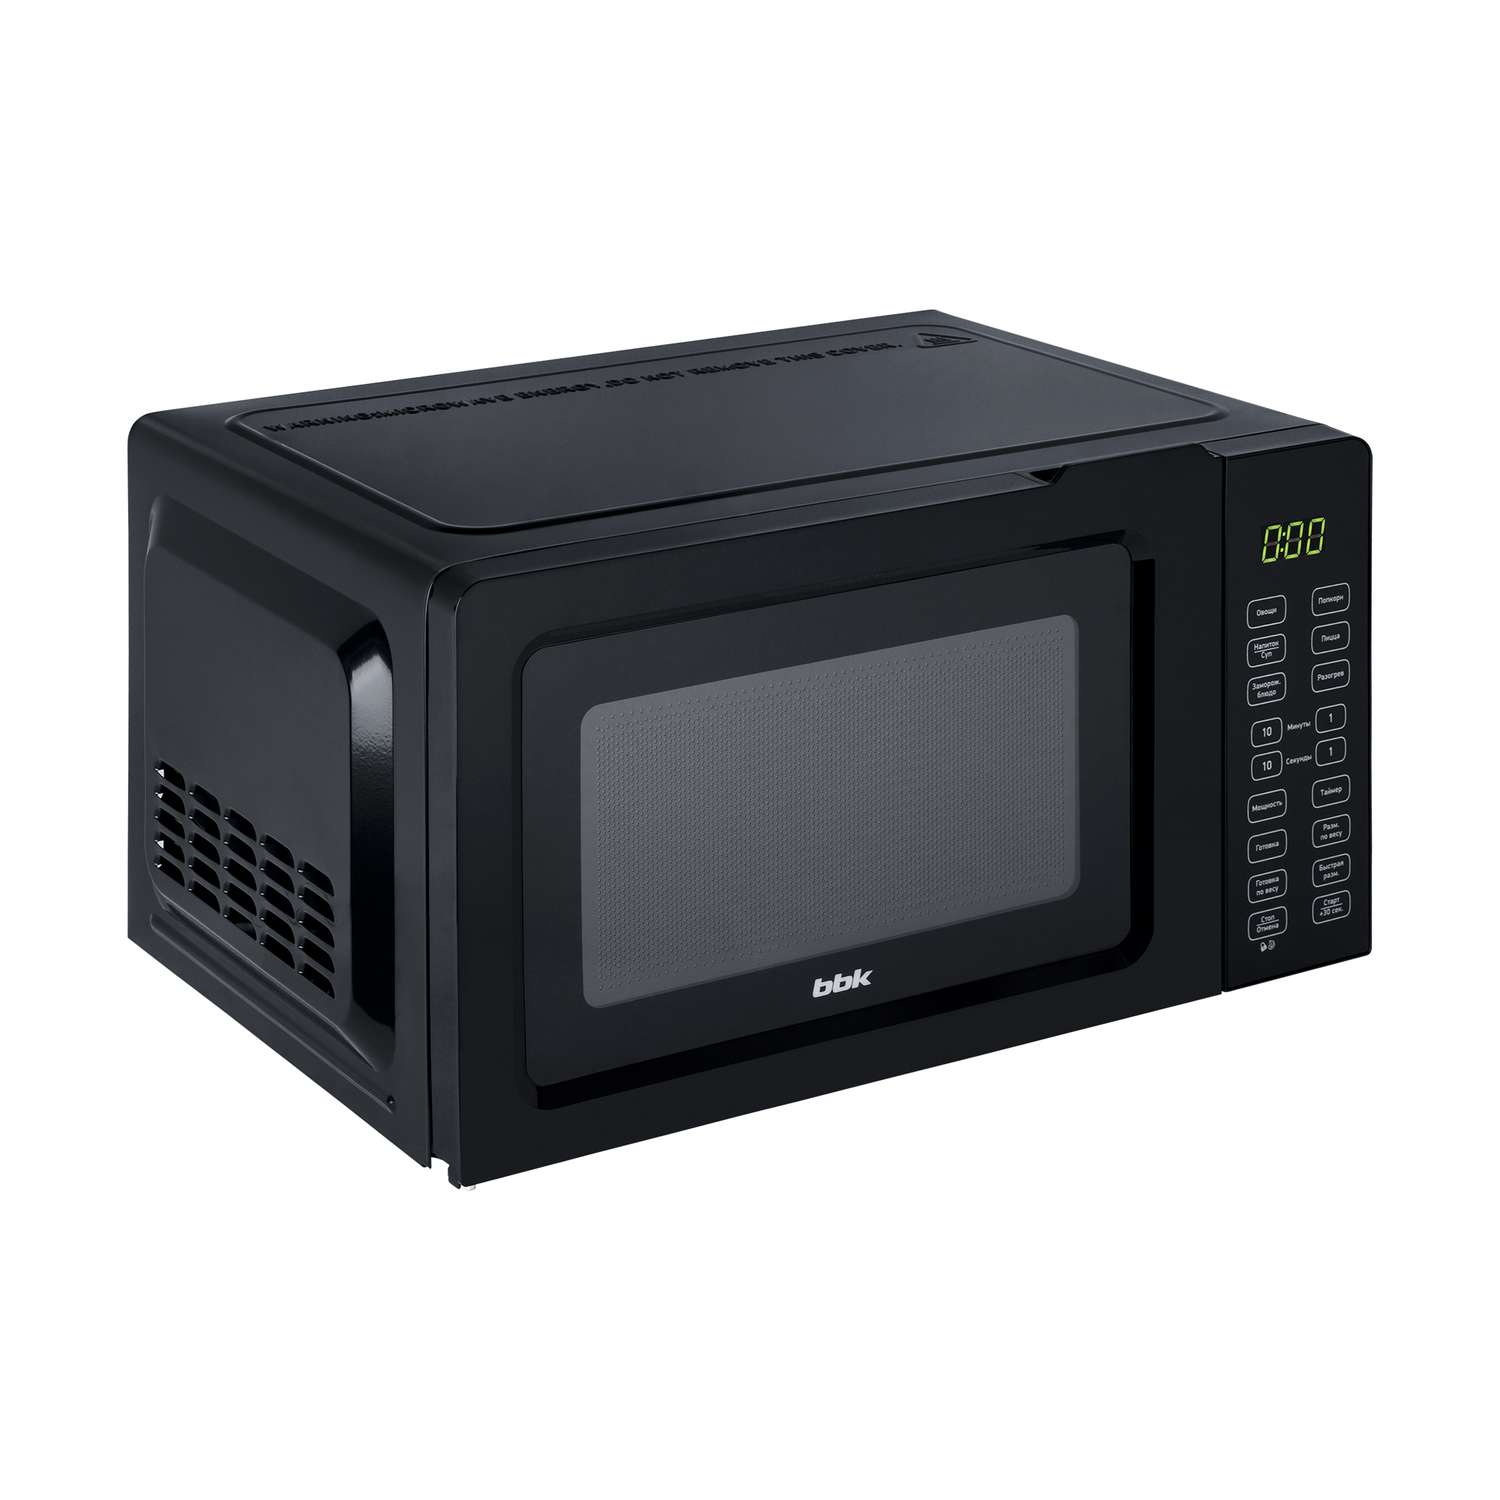 Микроволновая печь BBK 17MWS-786S/B черный объем 17 л мощность 700 Вт электронное управление - фото 3